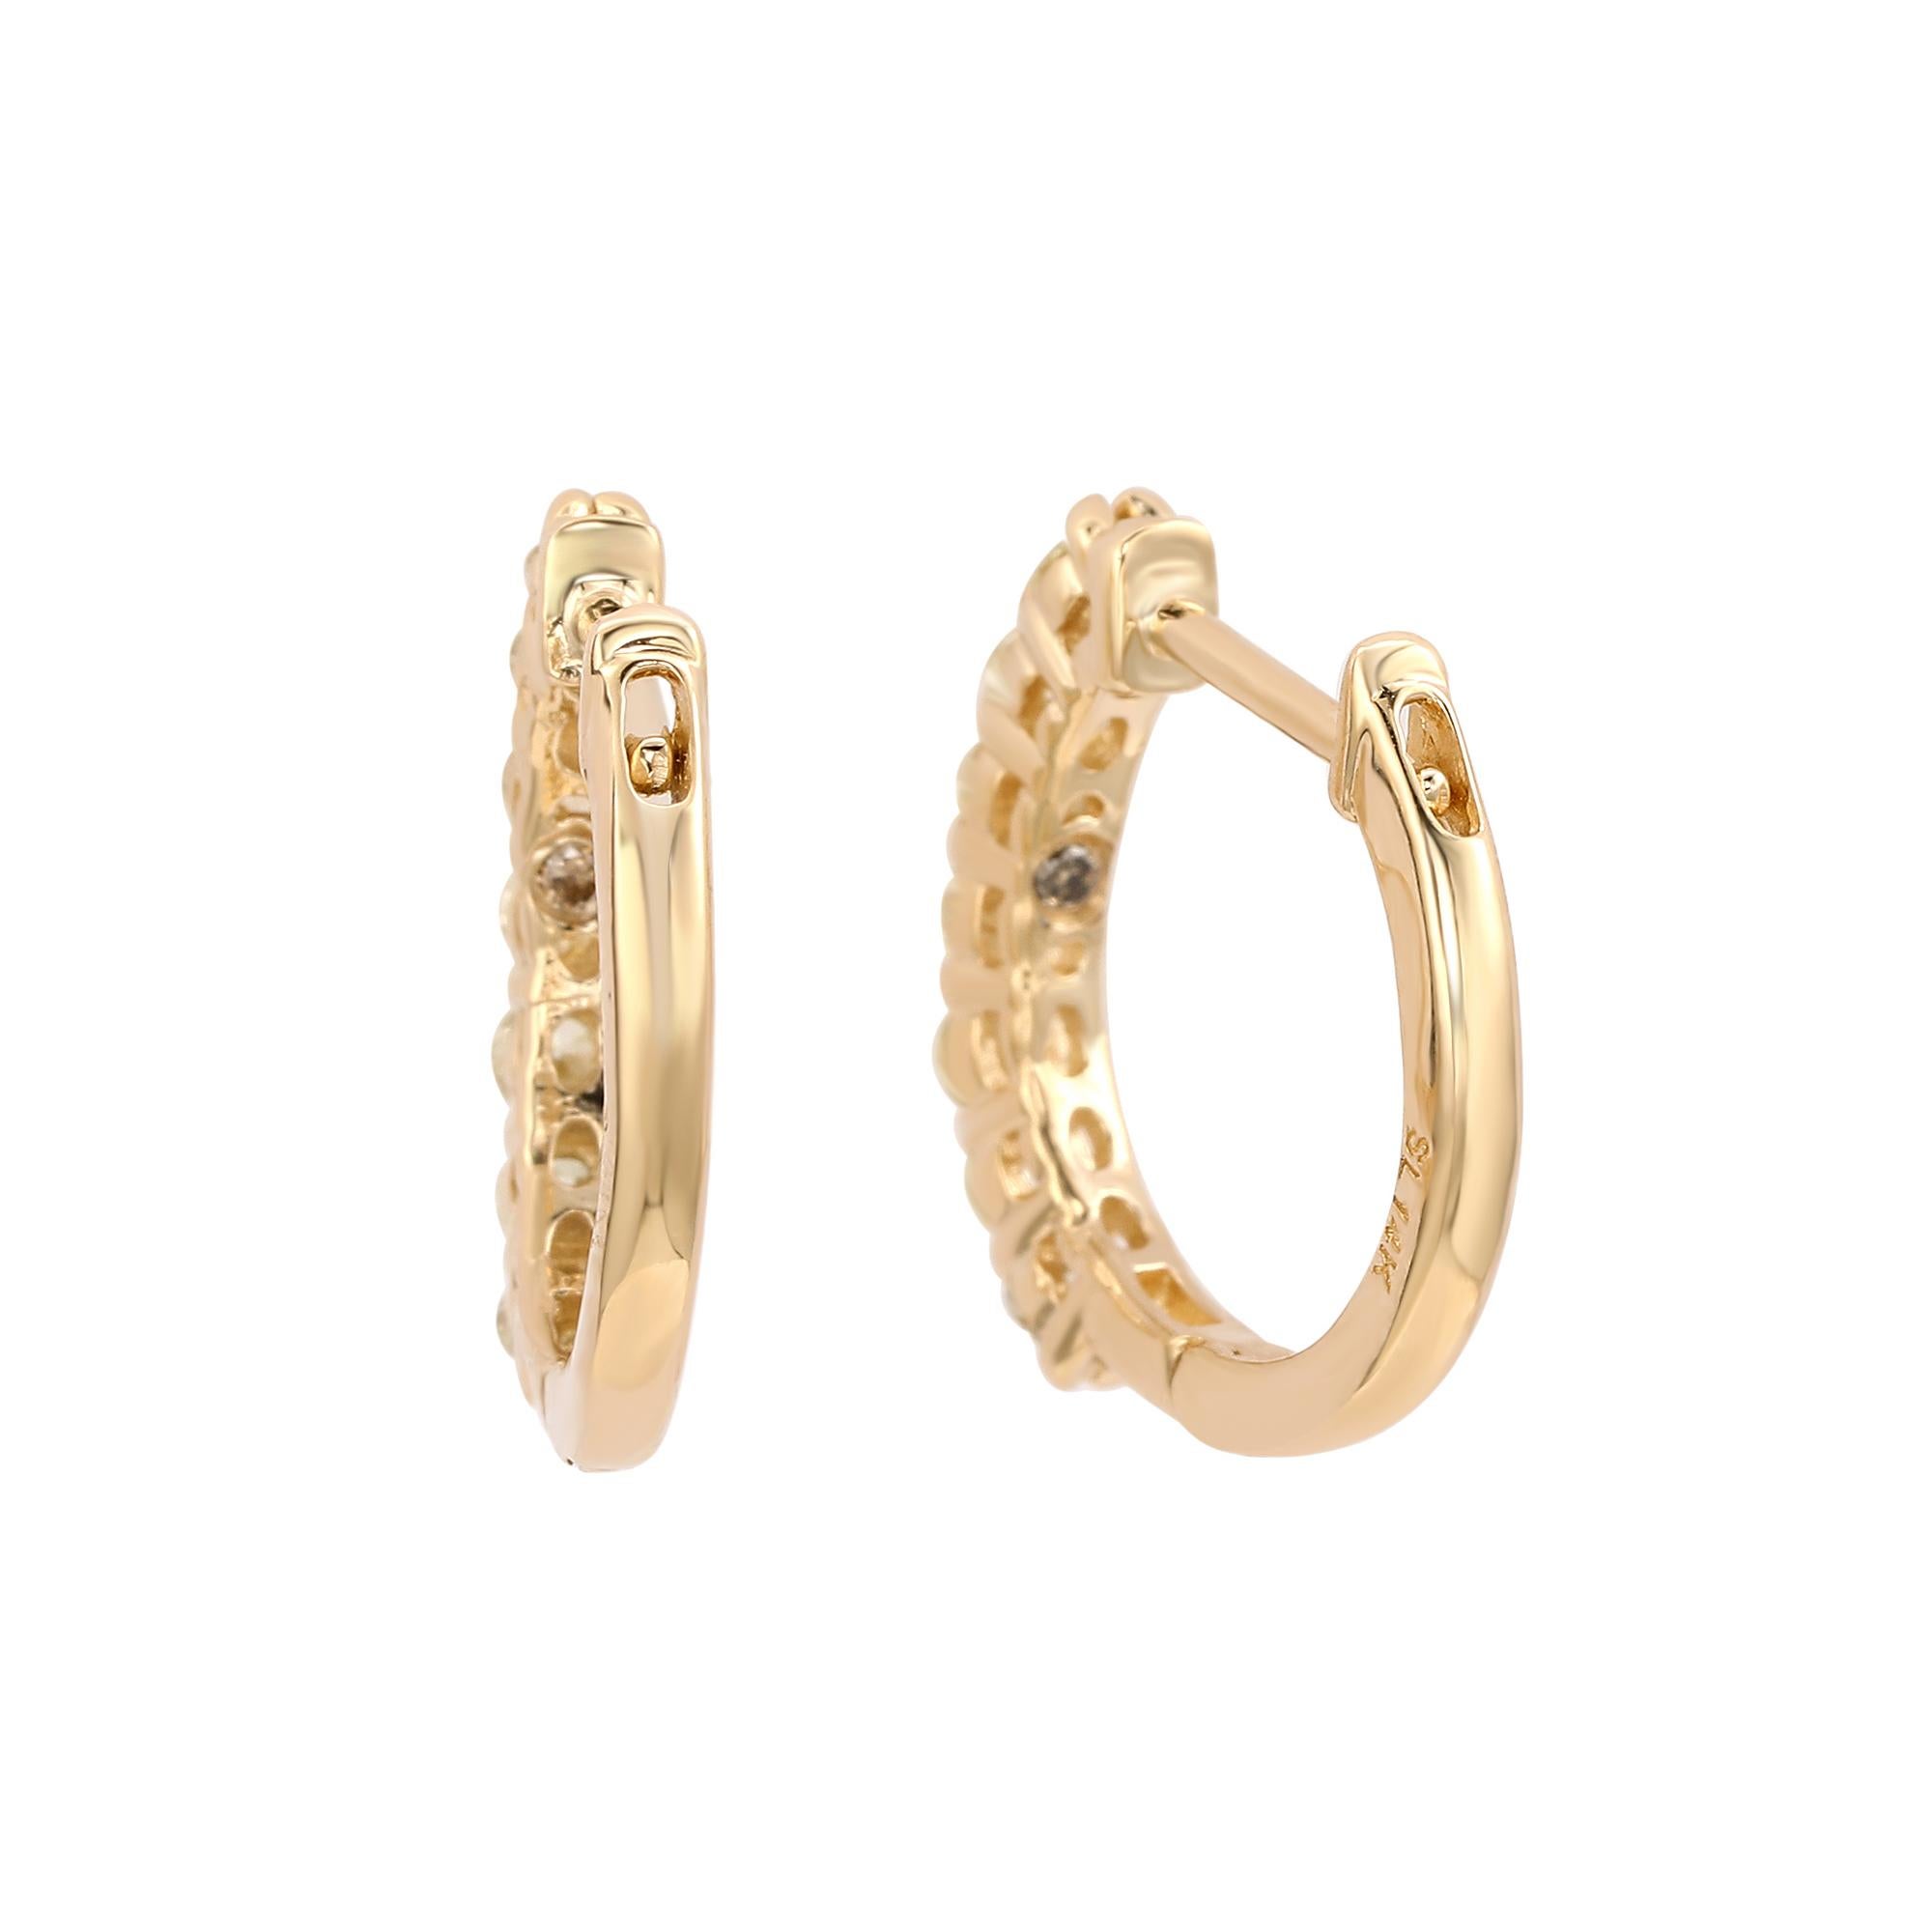 Setzen Sie ein Zeichen mit den atemberaubenden Huggie-Hoop-Ohrringen, perfekt für Frauen jeden Alters. Diese Huggie Hoop-Ohrringe sind mit einer einzigen Reihe weißer Diamanten im Rundschliff in 14-karätigem Gelbgold gefasst. Diese Reifchen sind mit